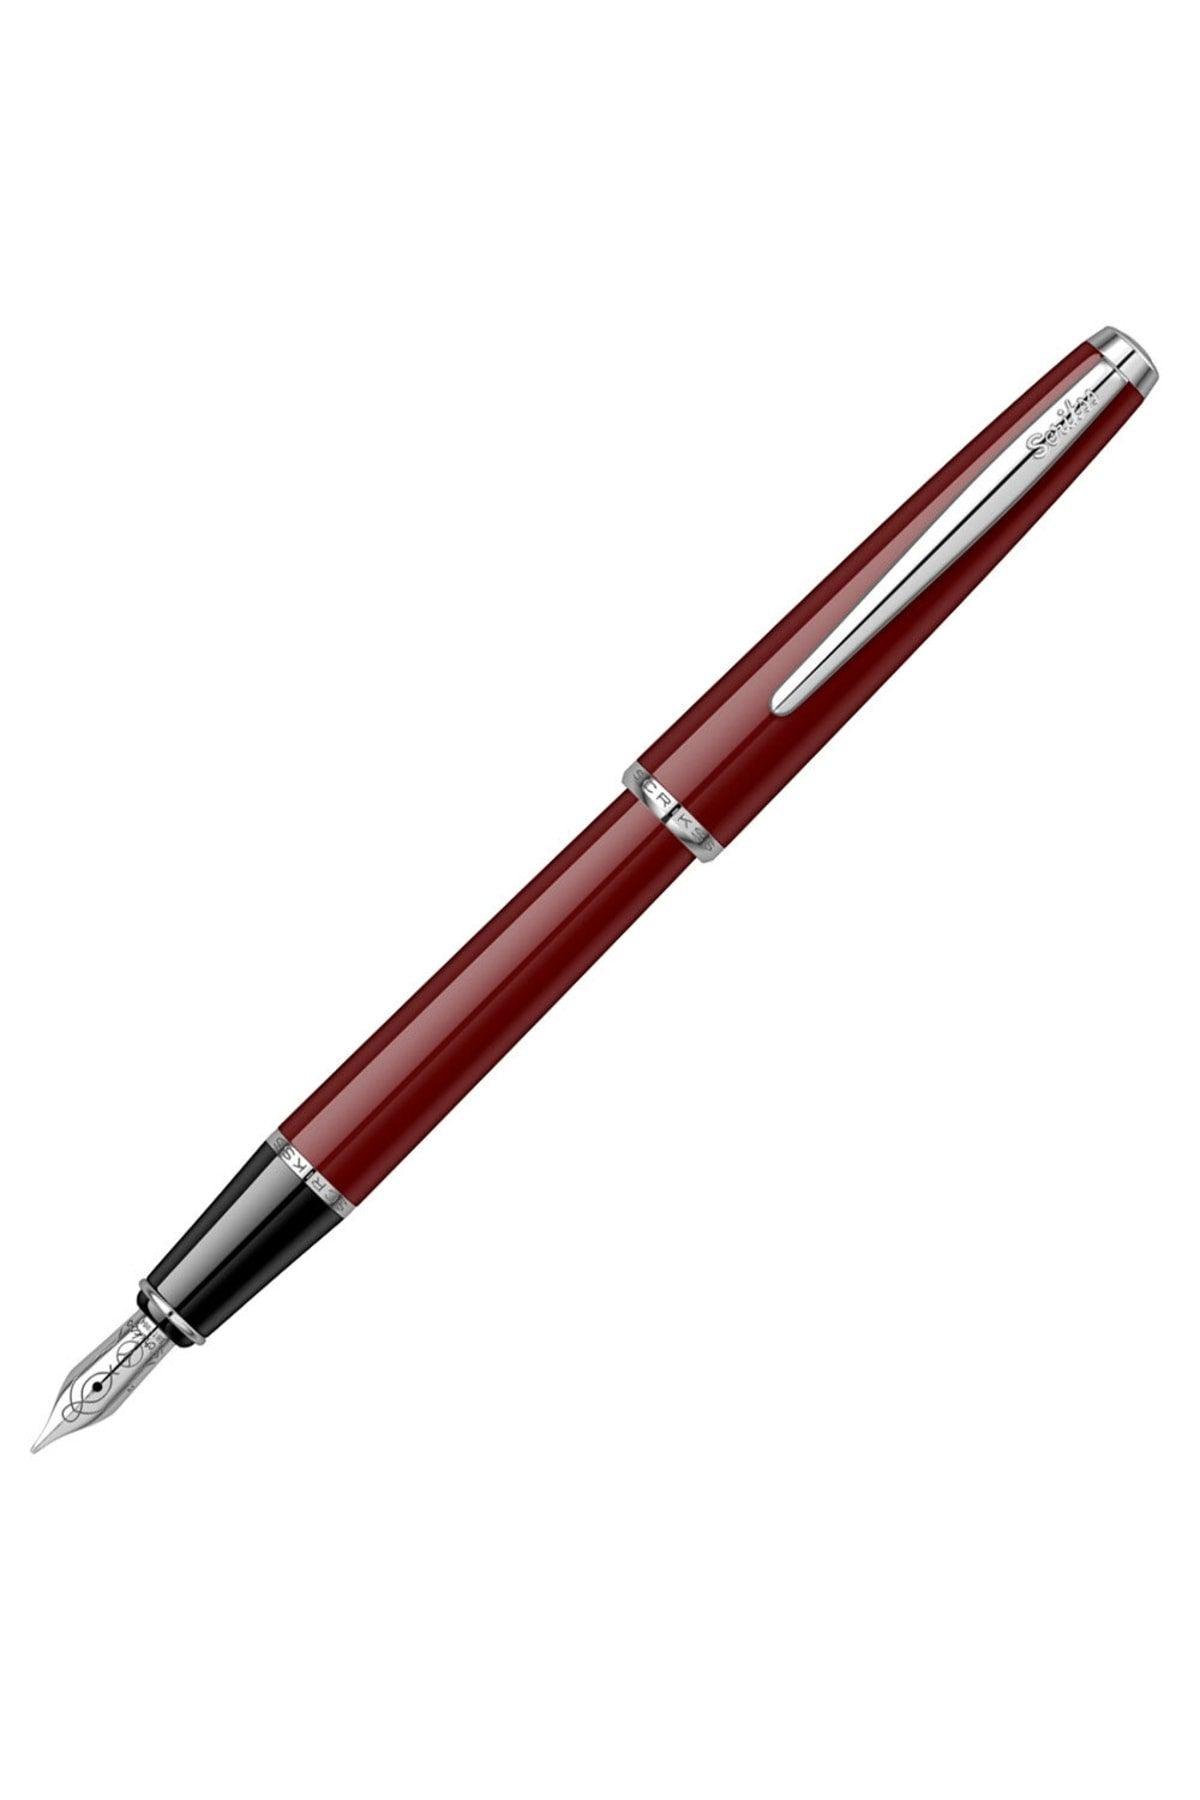 Fountain Pen 33 Claret Red Lifetime Warranty